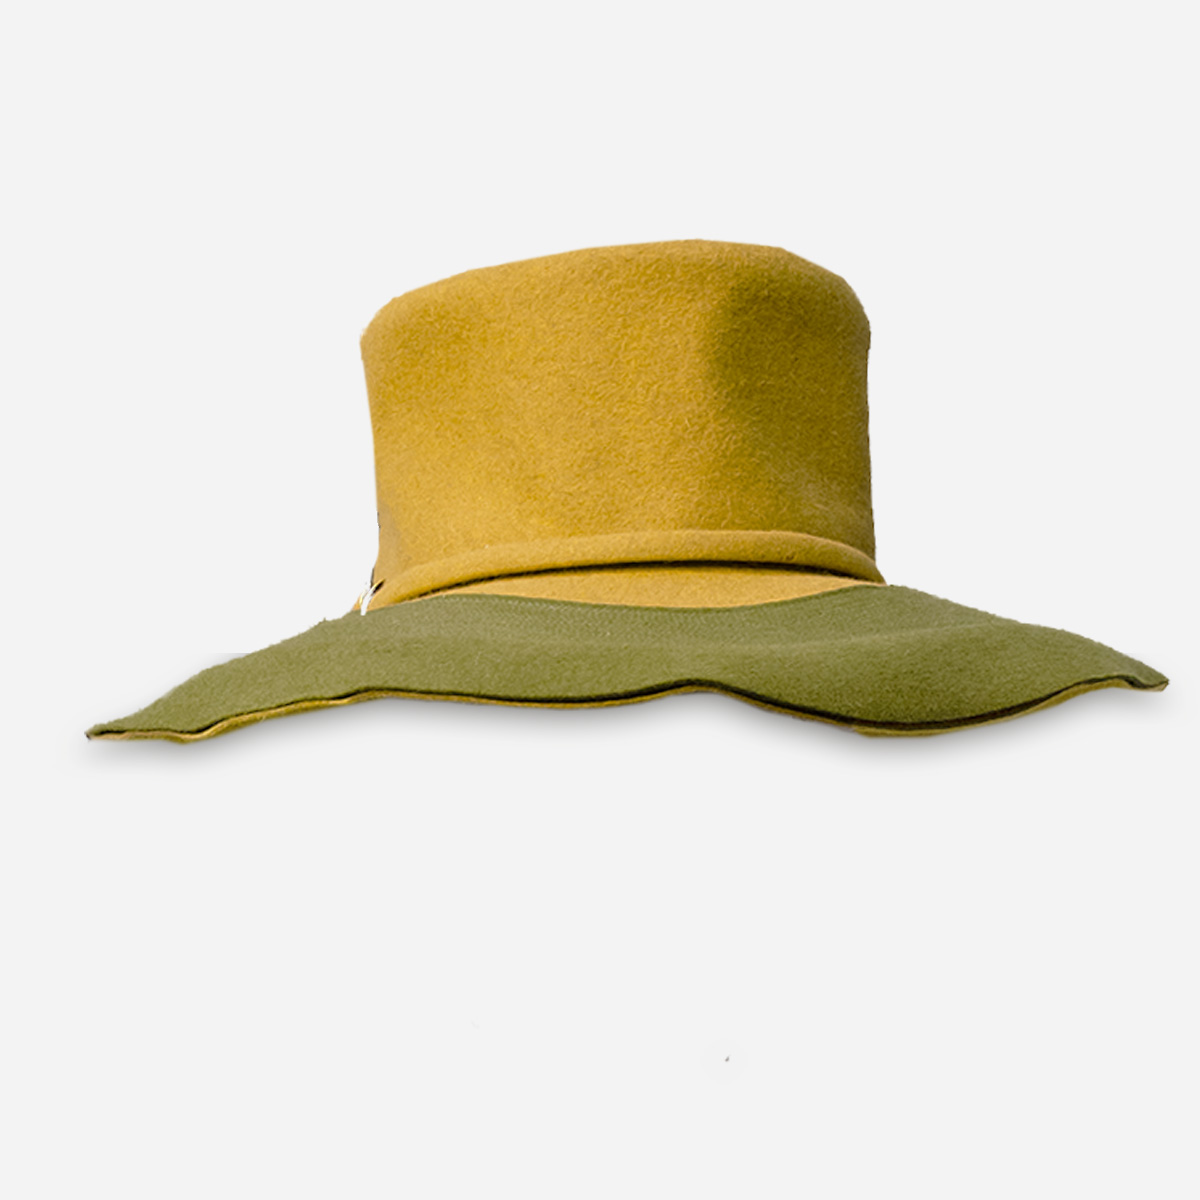 1970s wide brim winter hat